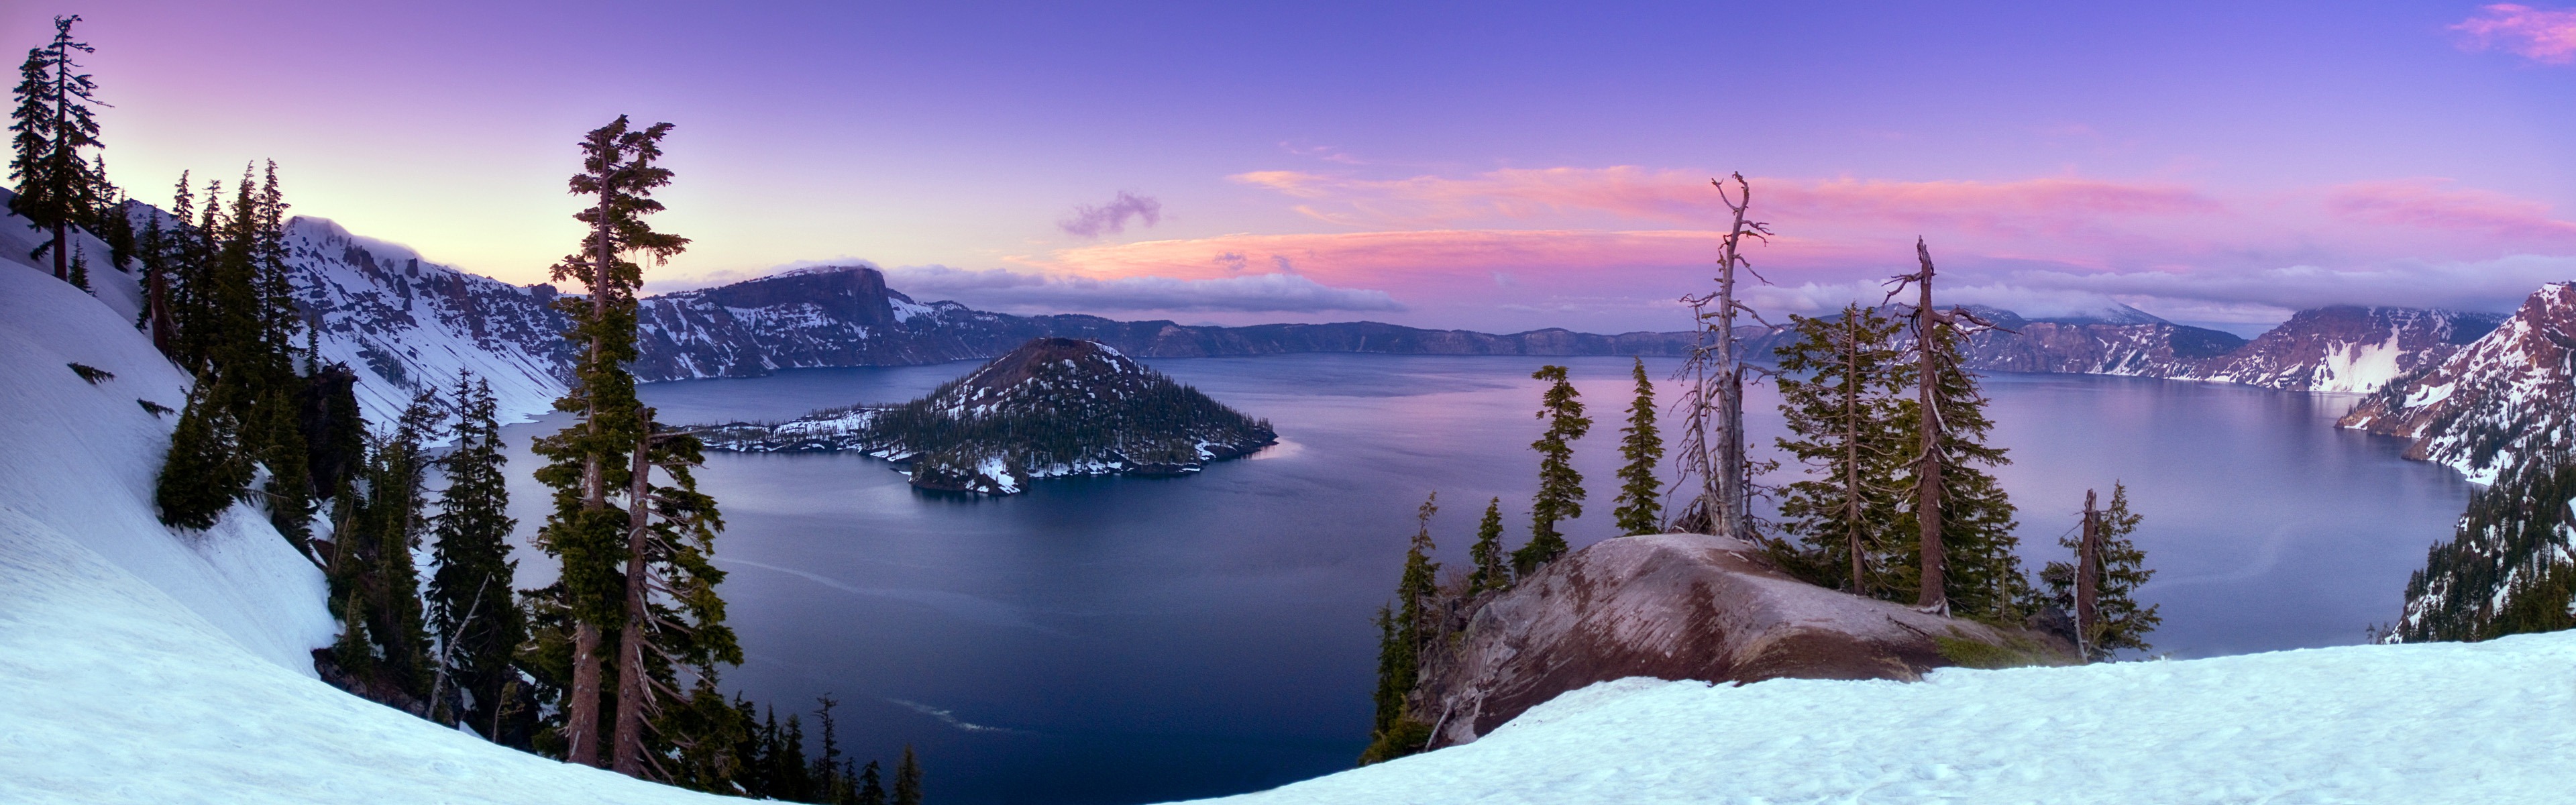 Windows 8 offiziellen Panorama Tapete, Wellen, Wälder, majestätische Berge #19 - 3840x1200